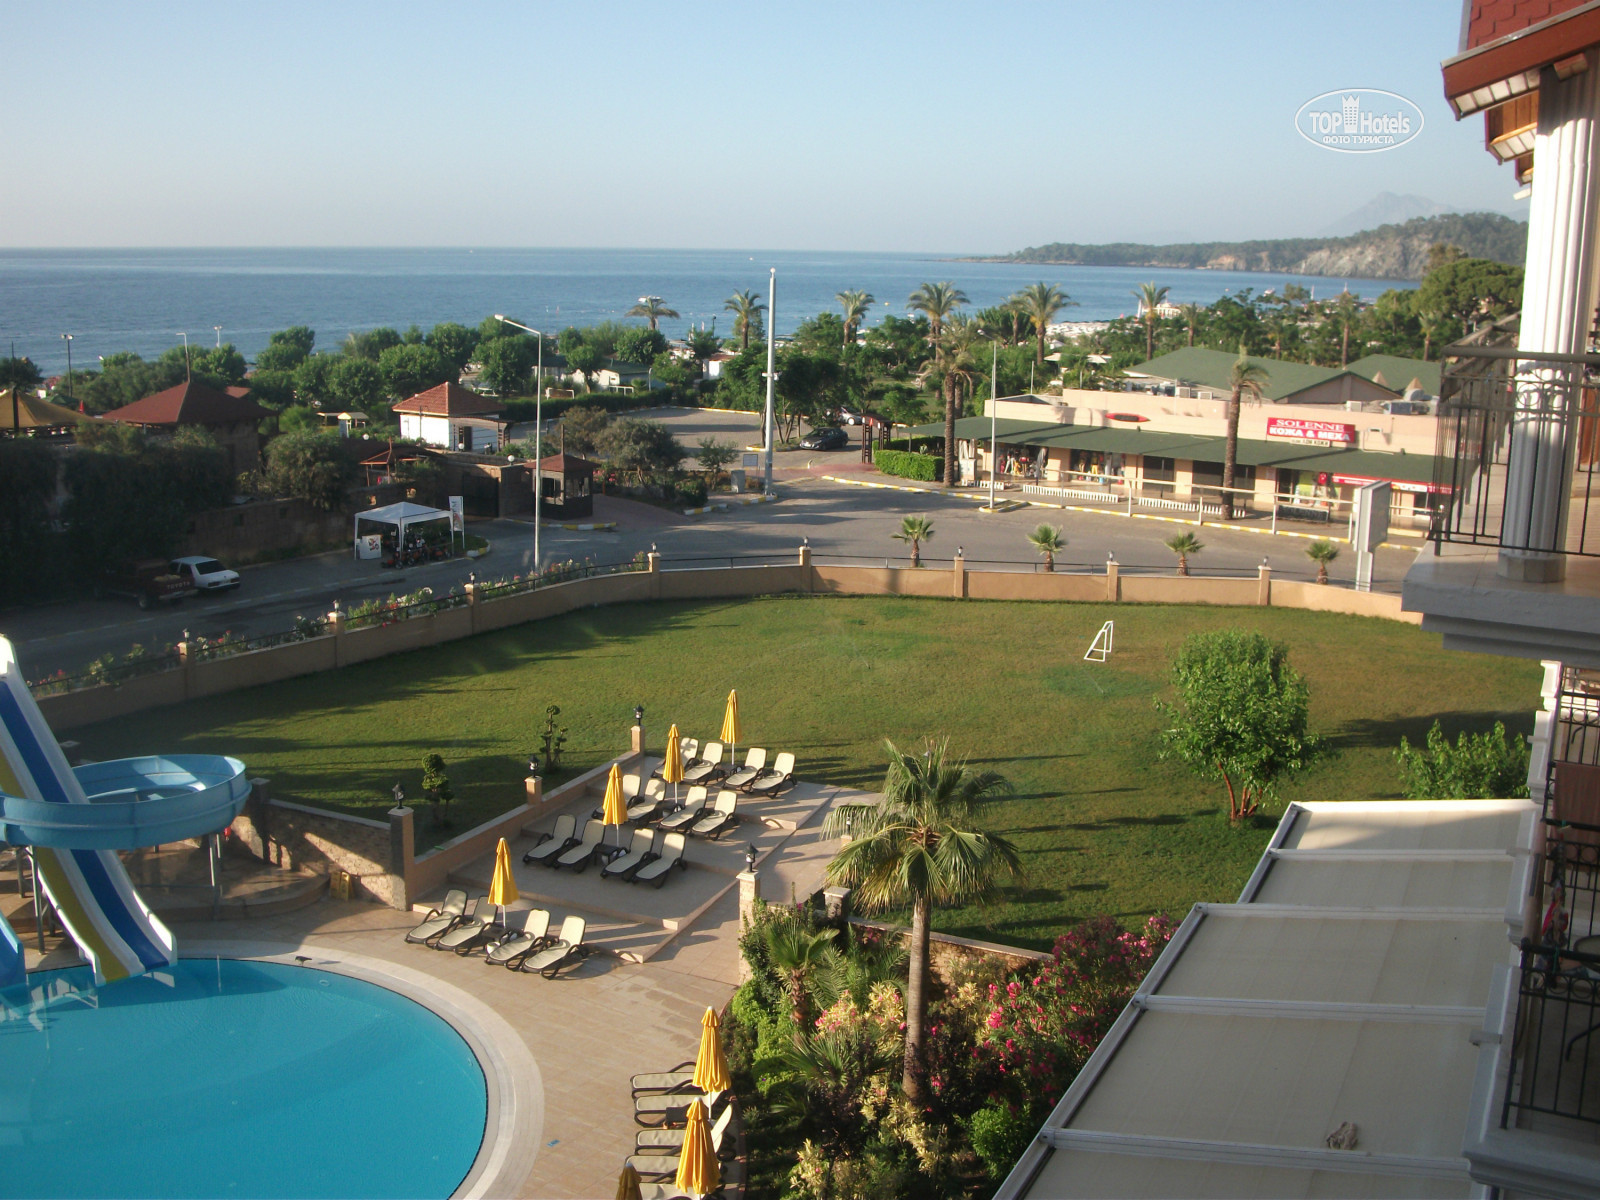 L'Oceanica фото отеля с моря